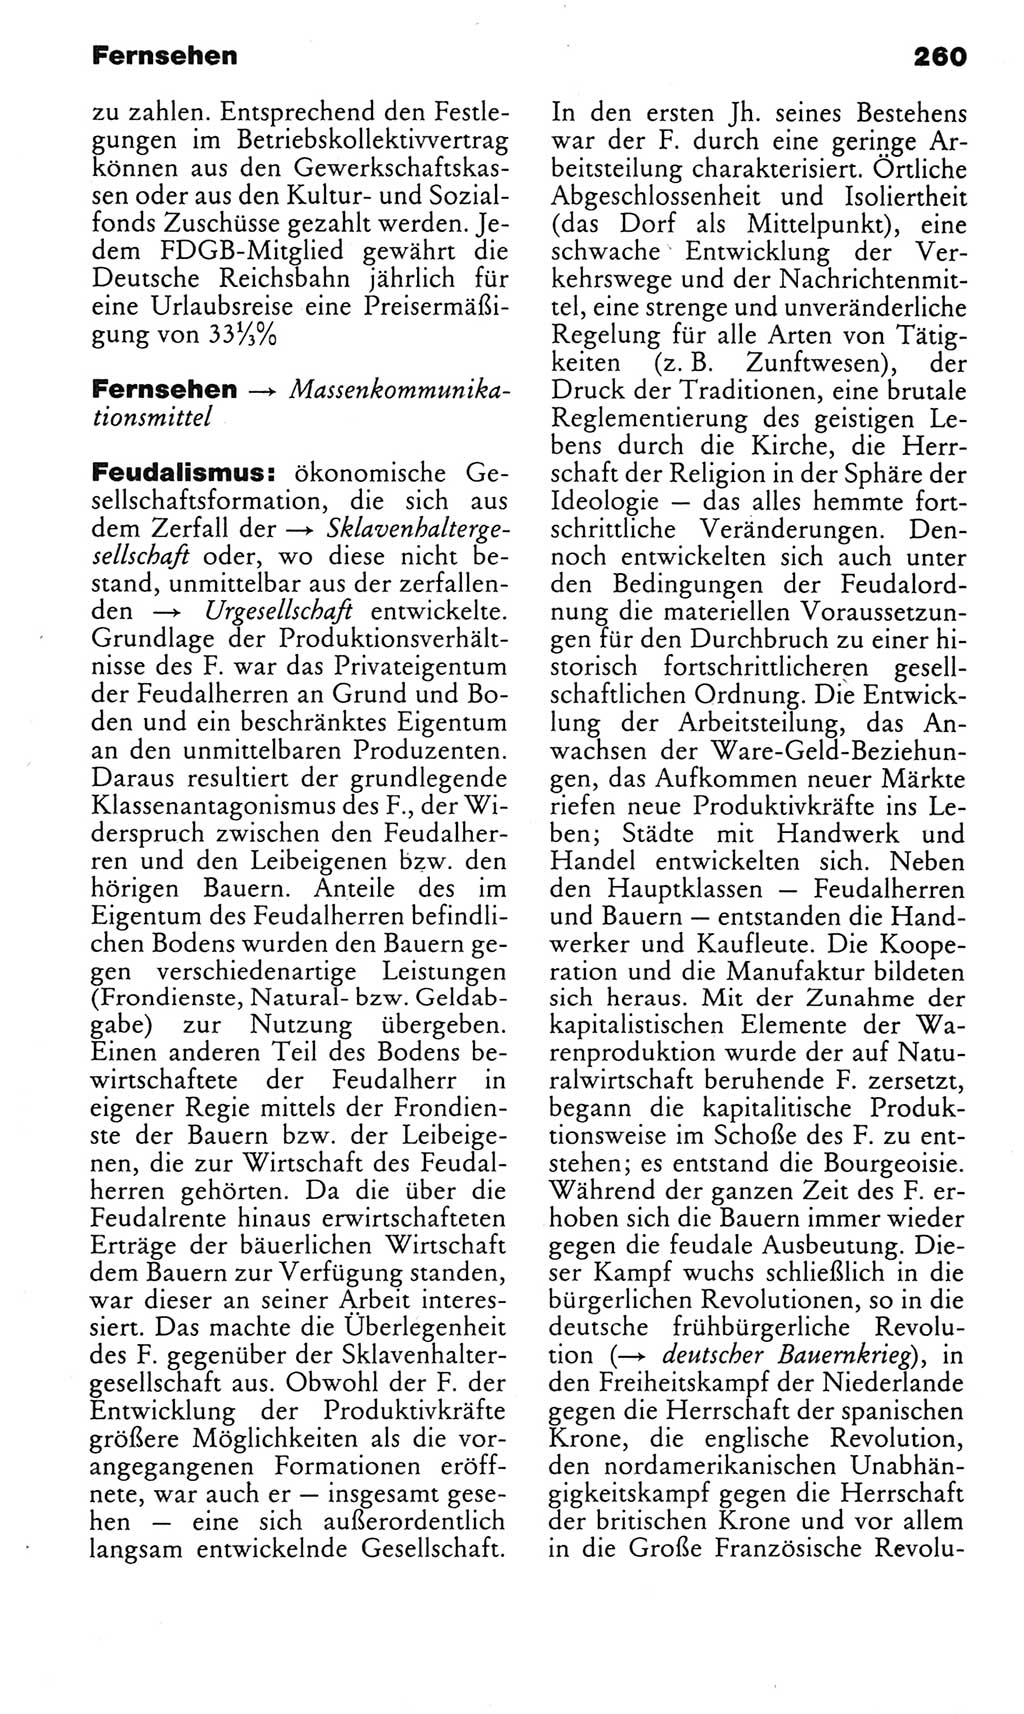 Kleines politisches Wörterbuch [Deutsche Demokratische Republik (DDR)] 1985, Seite 260 (Kl. pol. Wb. DDR 1985, S. 260)